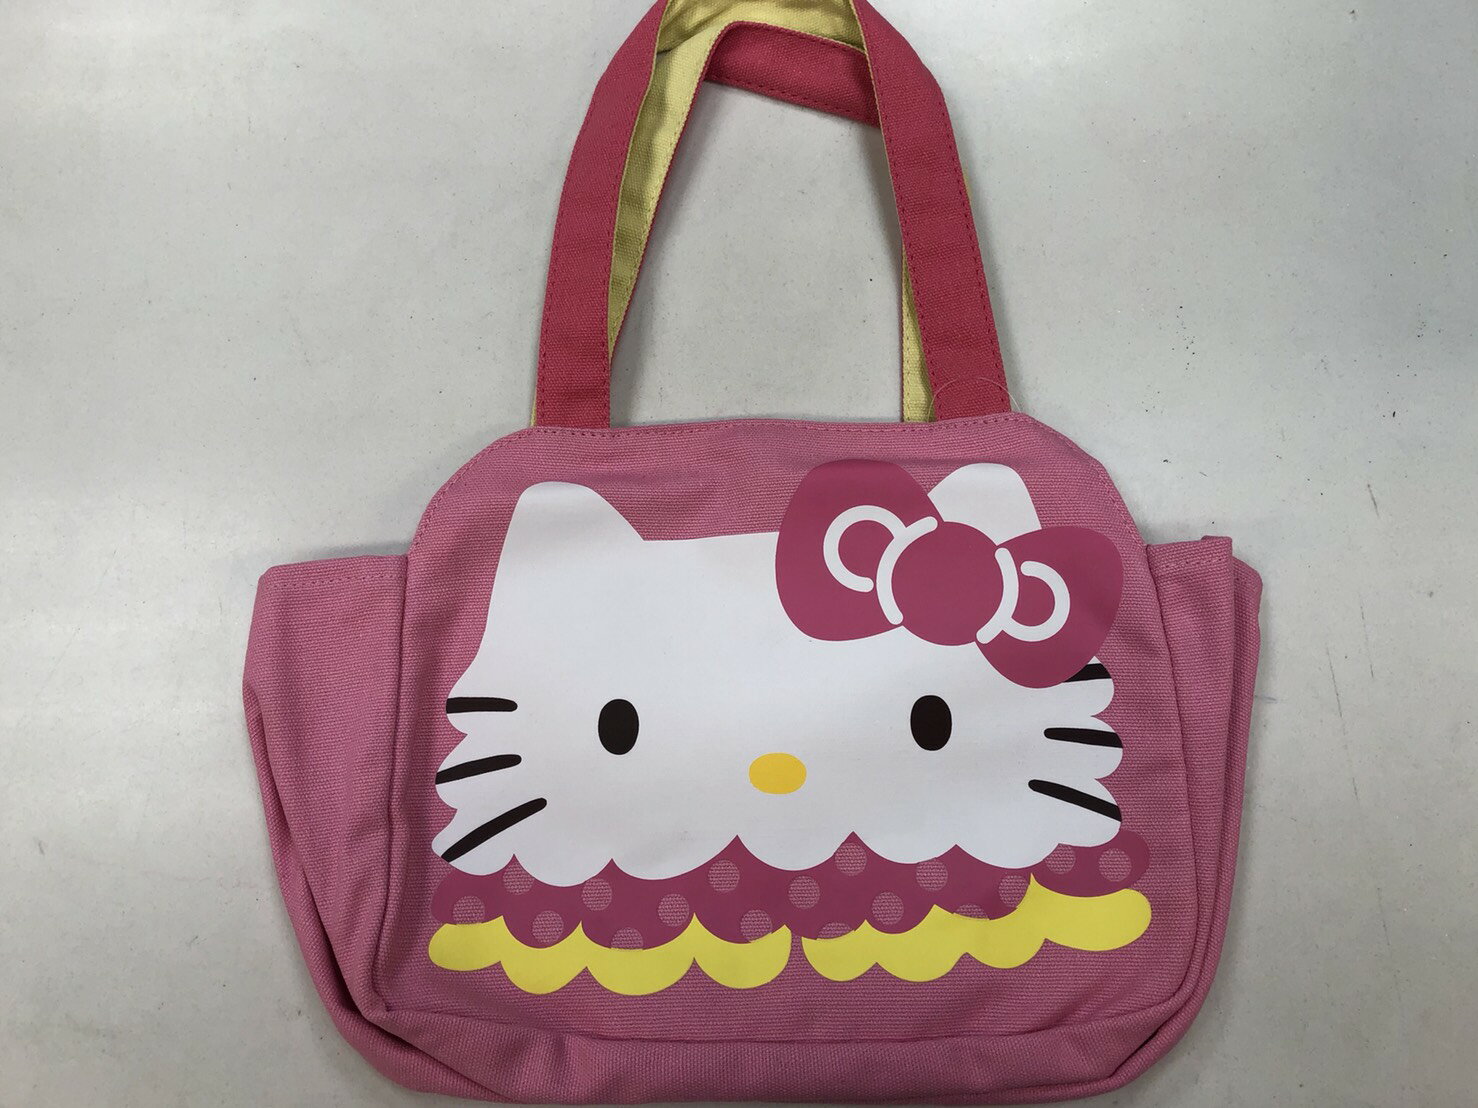 大賀屋 Hello Kitty 造型 便當袋 帆布 手提袋 收納袋 三麗鷗 凱蒂貓 KT 正版 授權 T0001 173